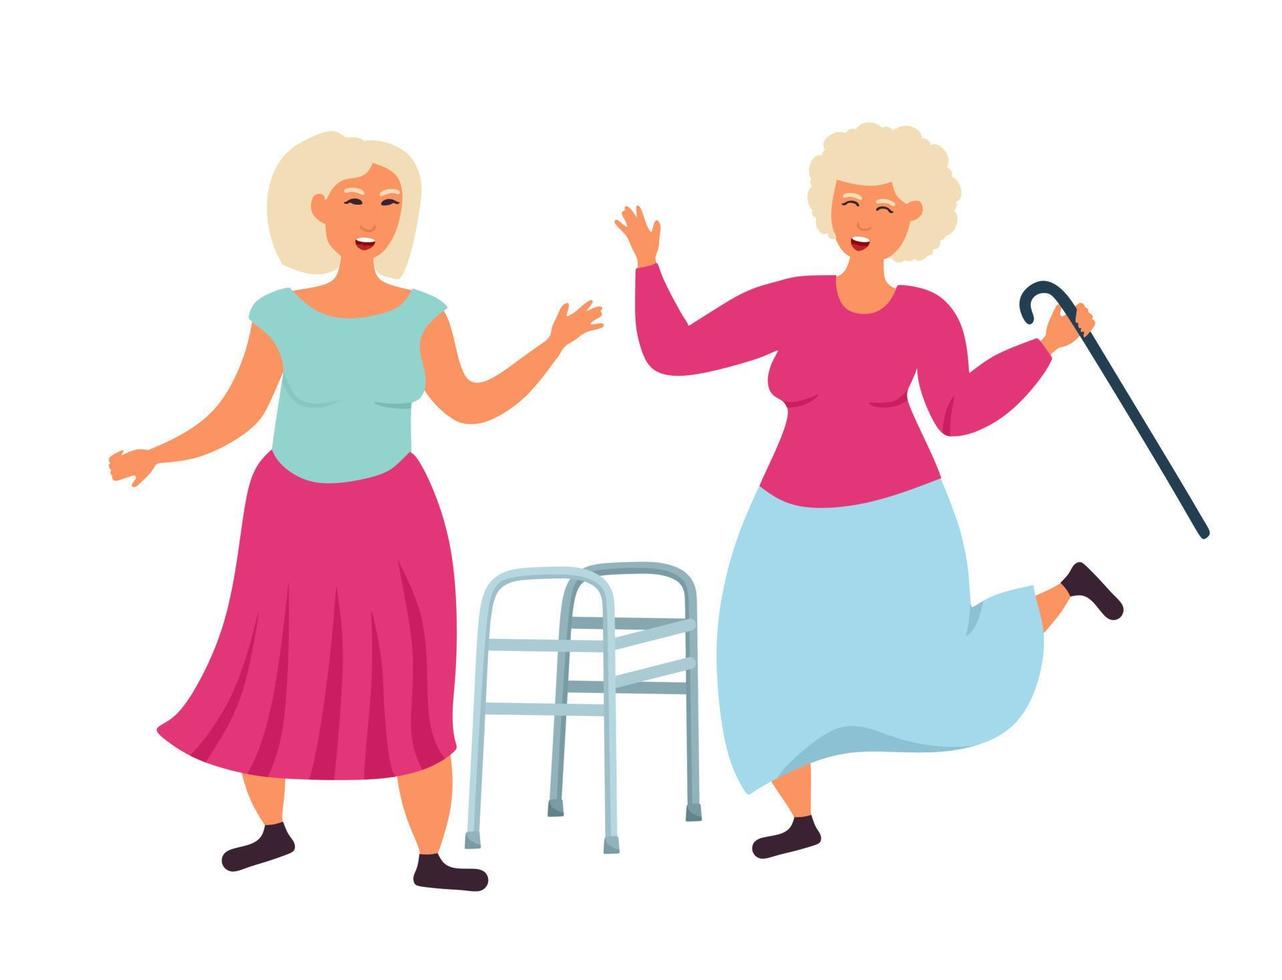 gamla människor av farmor dans kastar bort en käpp och en rollator. den äldre mannen har roligt. vektor illustration isolerad på en vit bakgrund.